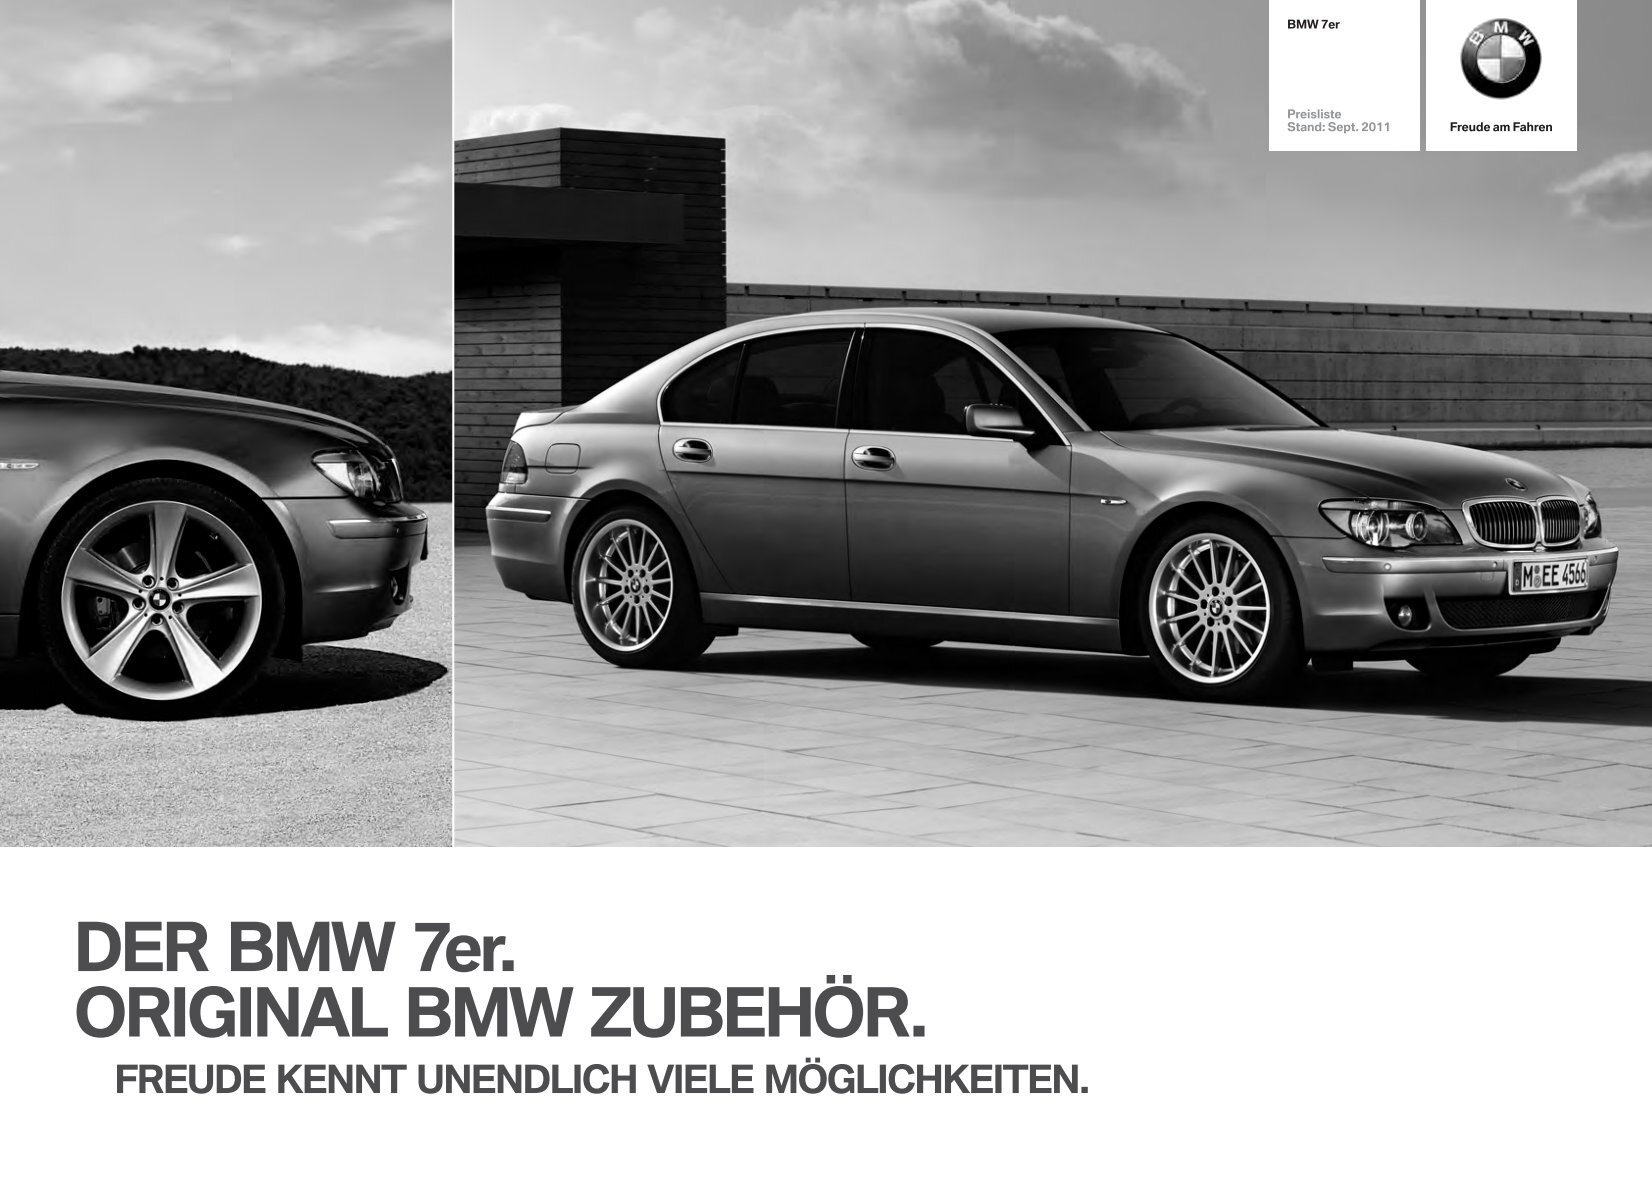 DER BMW 7er. ORIGINAL BMW ZUBEHÖR. - BMW Diplomatic Sales